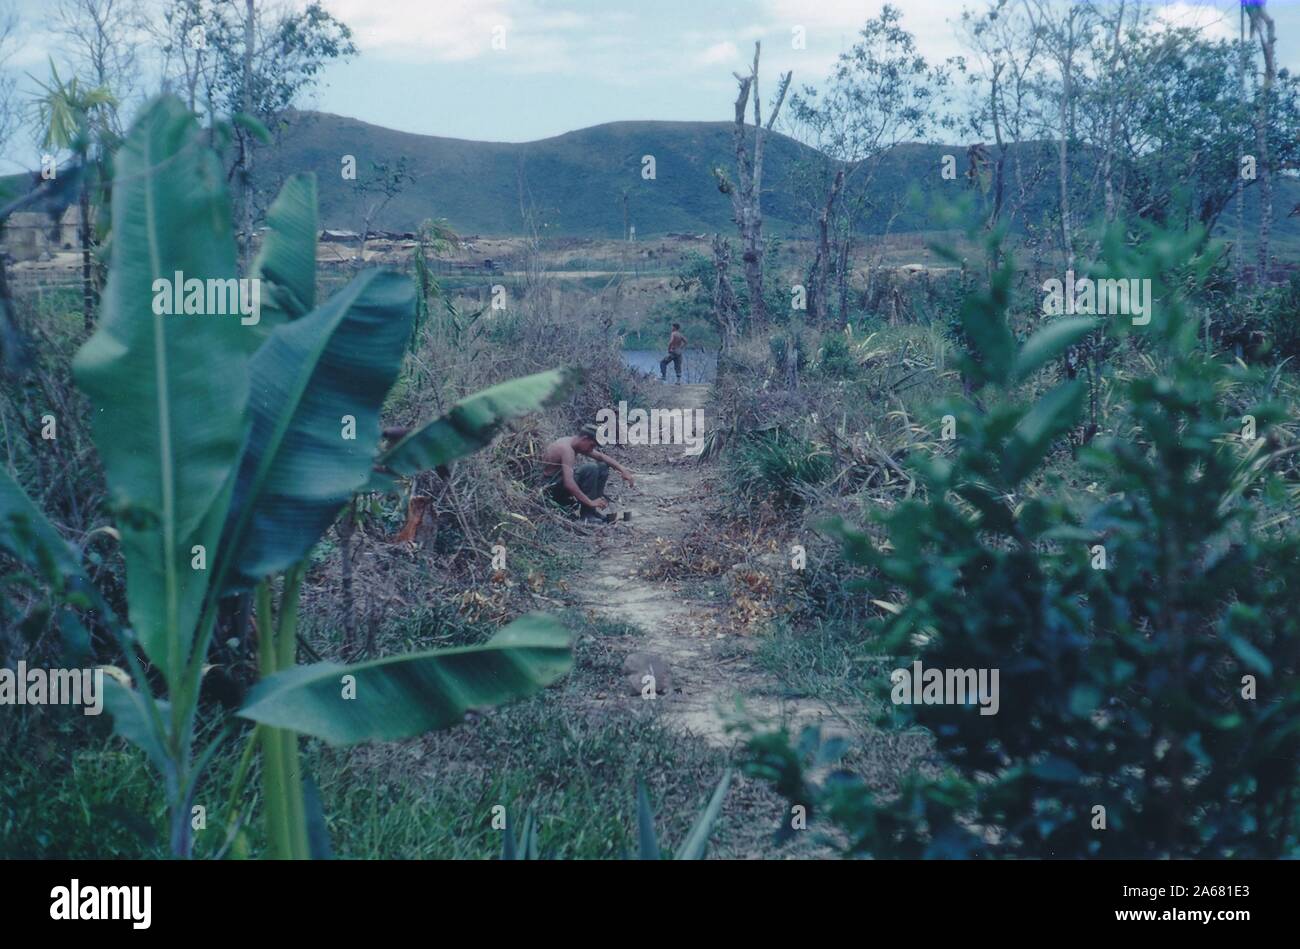 Ein langer Schuss von einem schmutzigen Pfad, der zu einem Gewässer in einem ländlichen Gebiet führt, wobei ein Soldat auf dem mittleren Pfad sitzt und ein anderer in der Nähe des Wasserrandes, Vietnam, 1965, steht. () Stockfoto